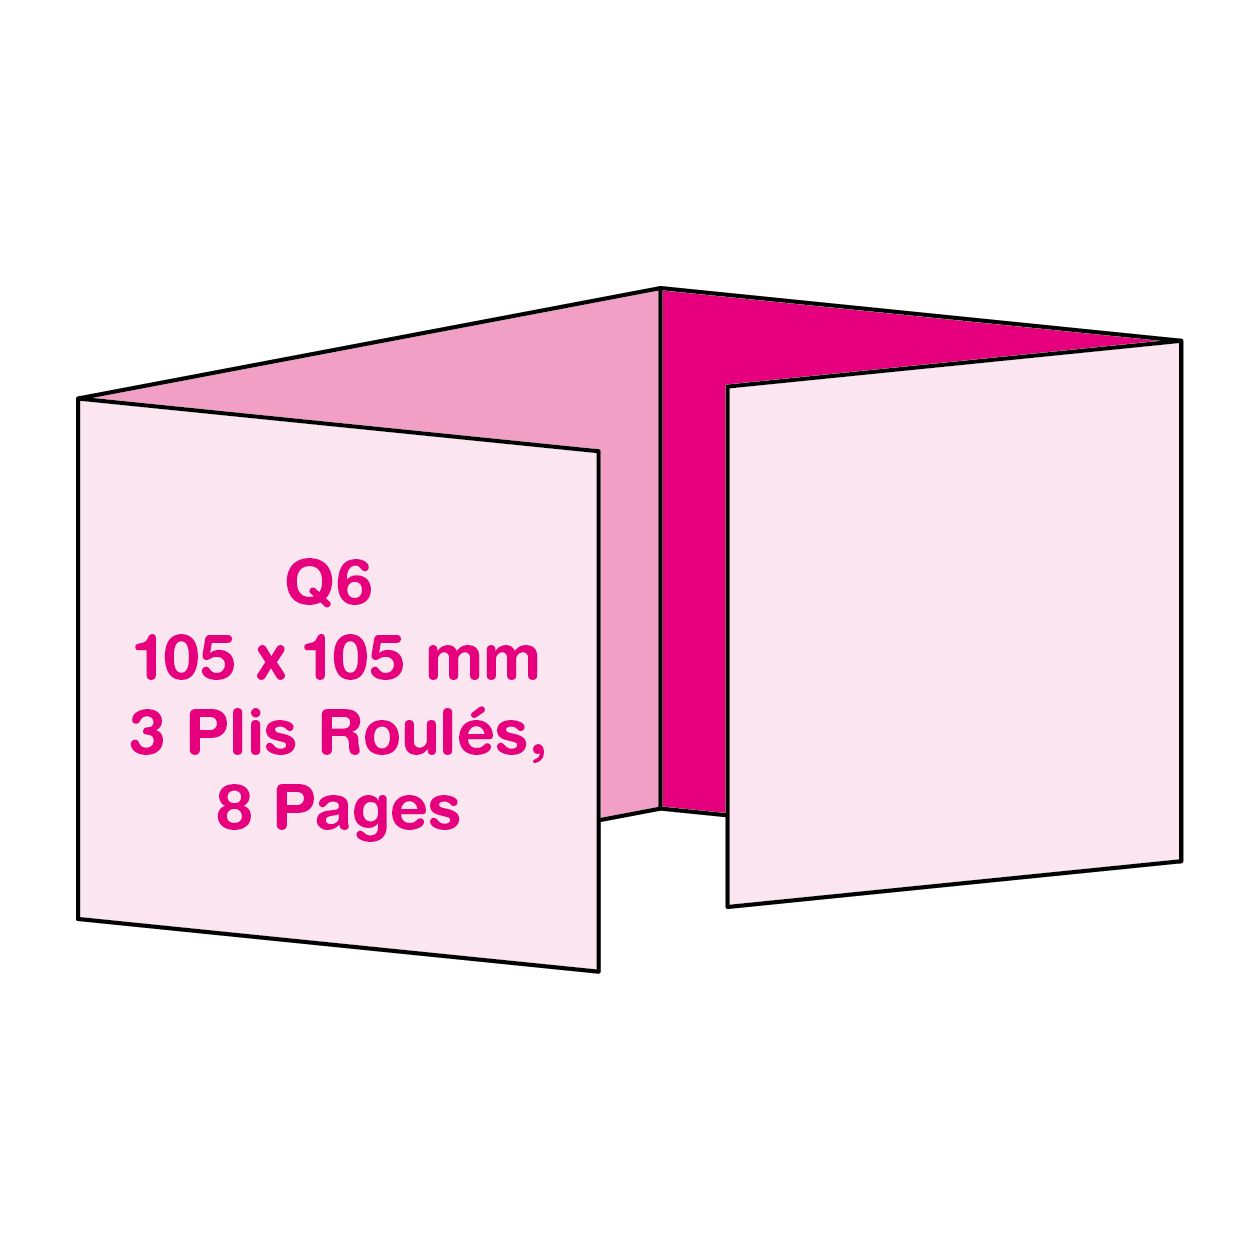 Format Q6 (10.5 x 10.5 cm), 3 Plis Roulés